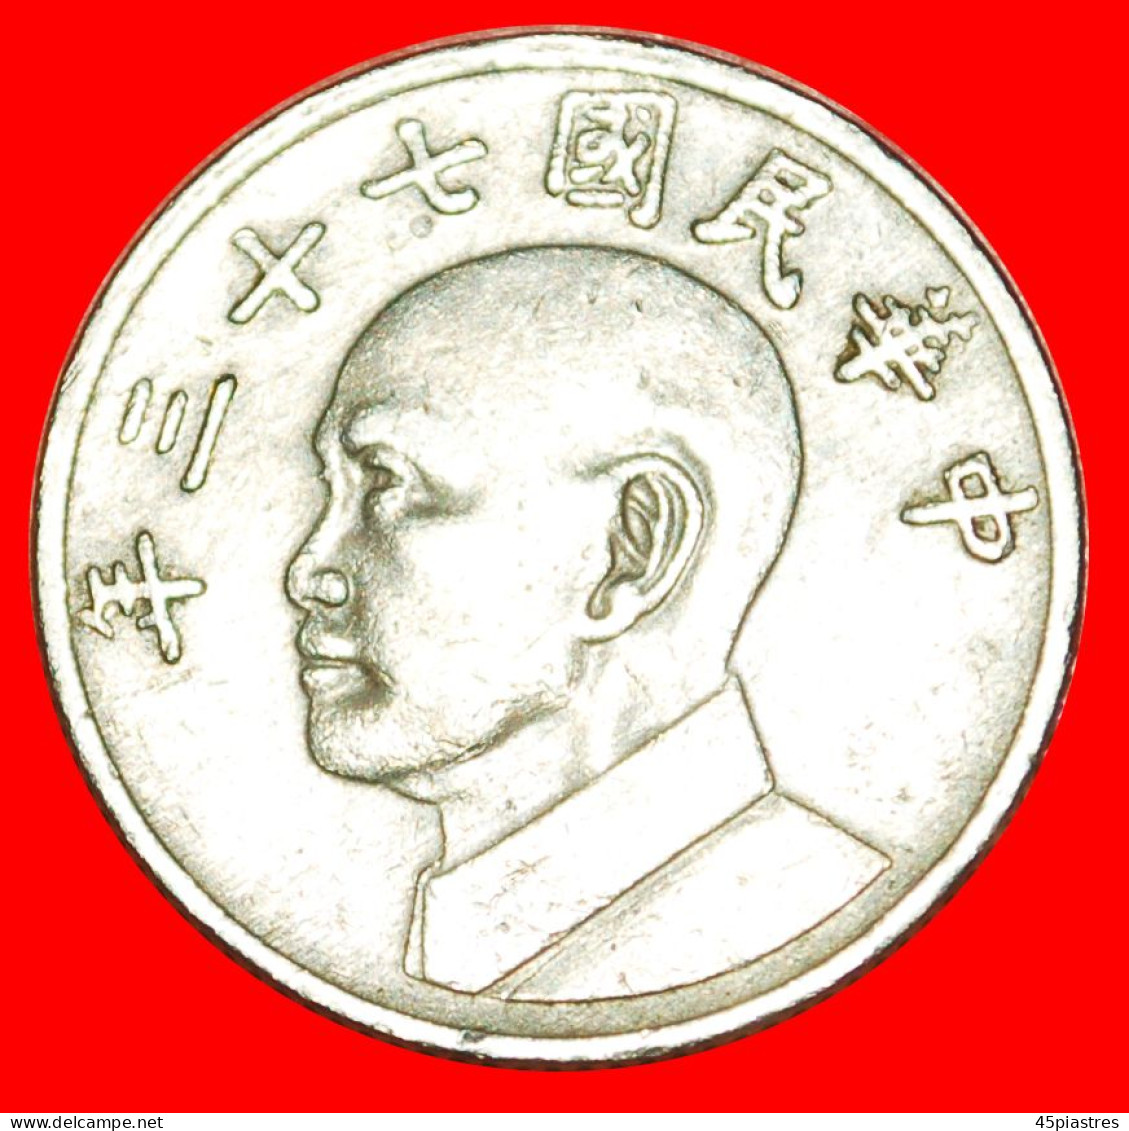 * CHIANG KAI-SHEK (1887-1975): TAIWAN (CHINA)  5 YUAN 73 (1984)!  ·  LOW START · NO RESERVE! - Taiwan